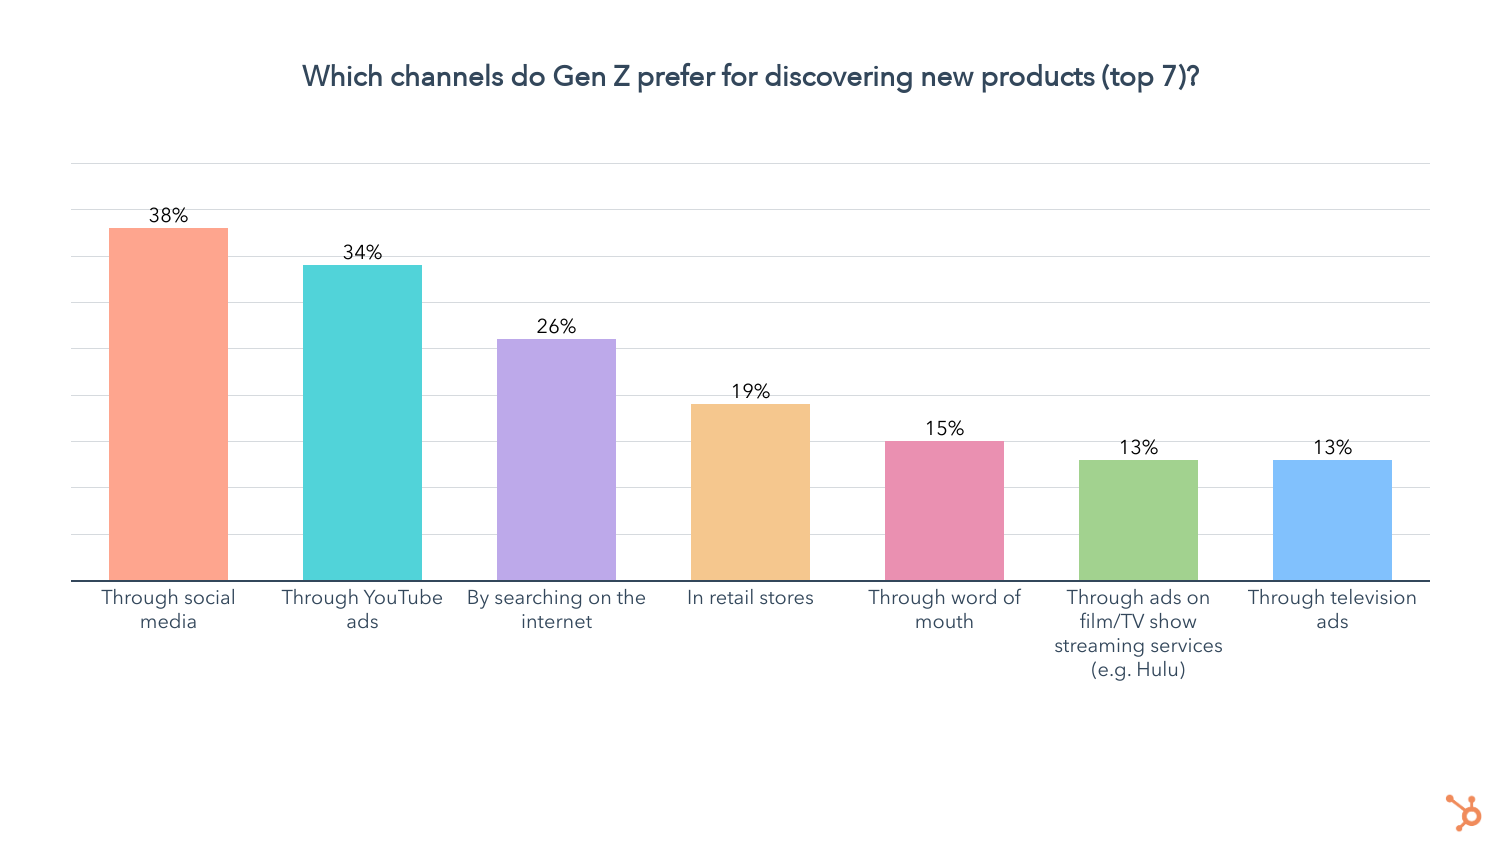 Cửa hàng bán lẻ ít được gen Z lựa chọn để tìm kiếm các sản phẩm mới